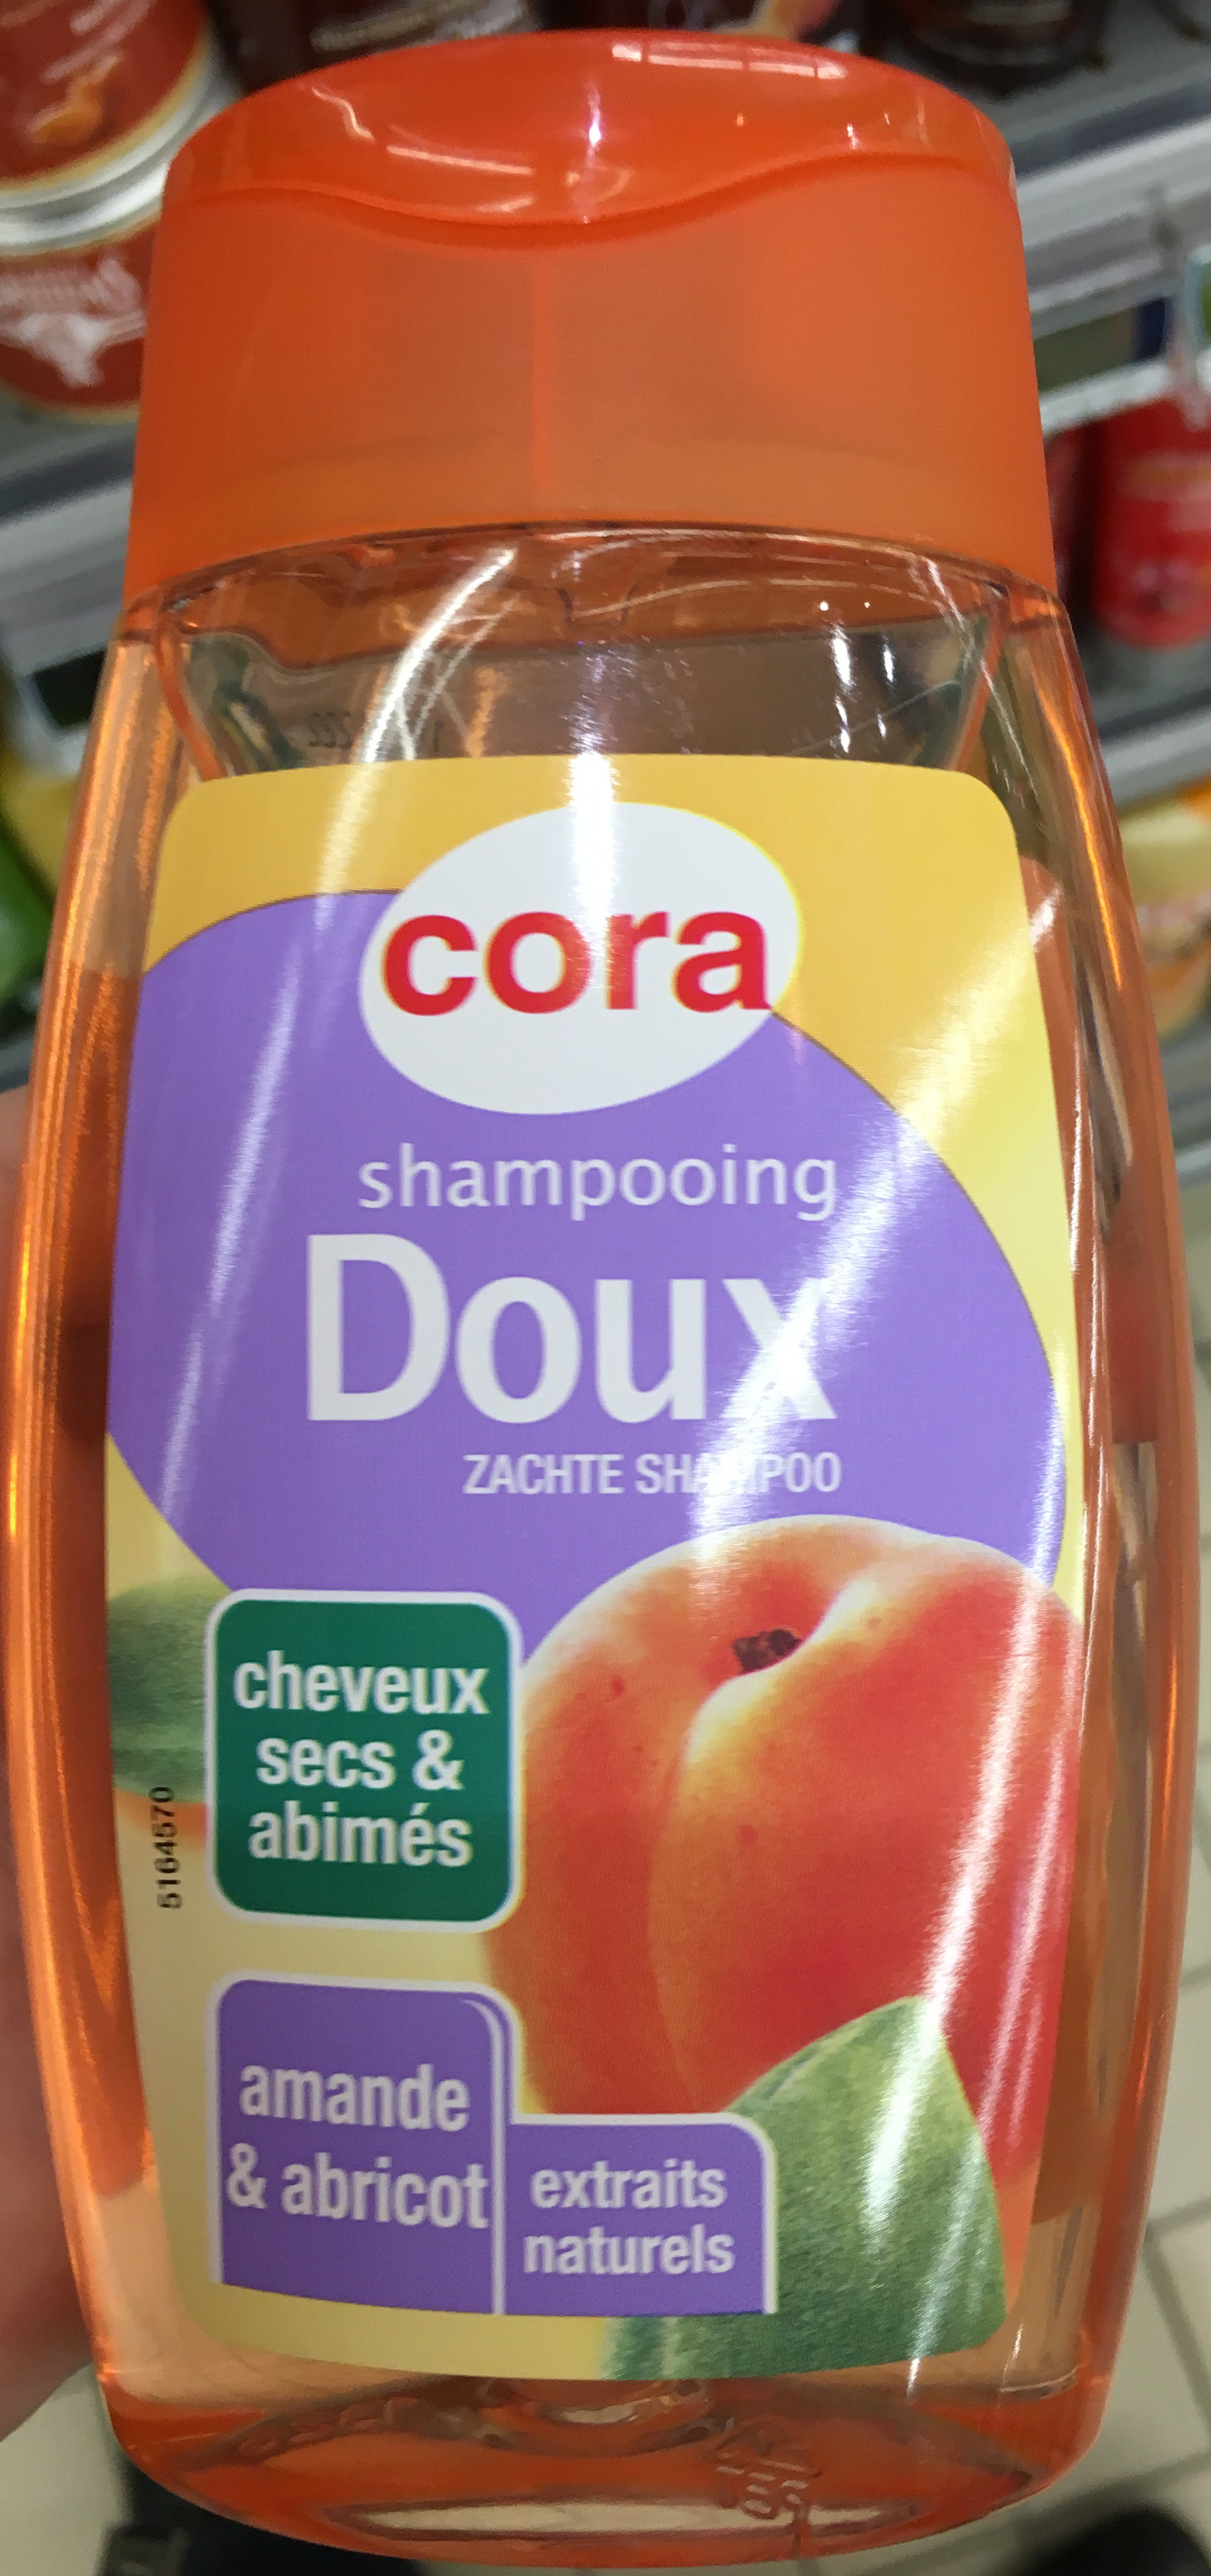 Shampooing Doux Cheveux secs & abimés Amande & Abricot - Product - fr